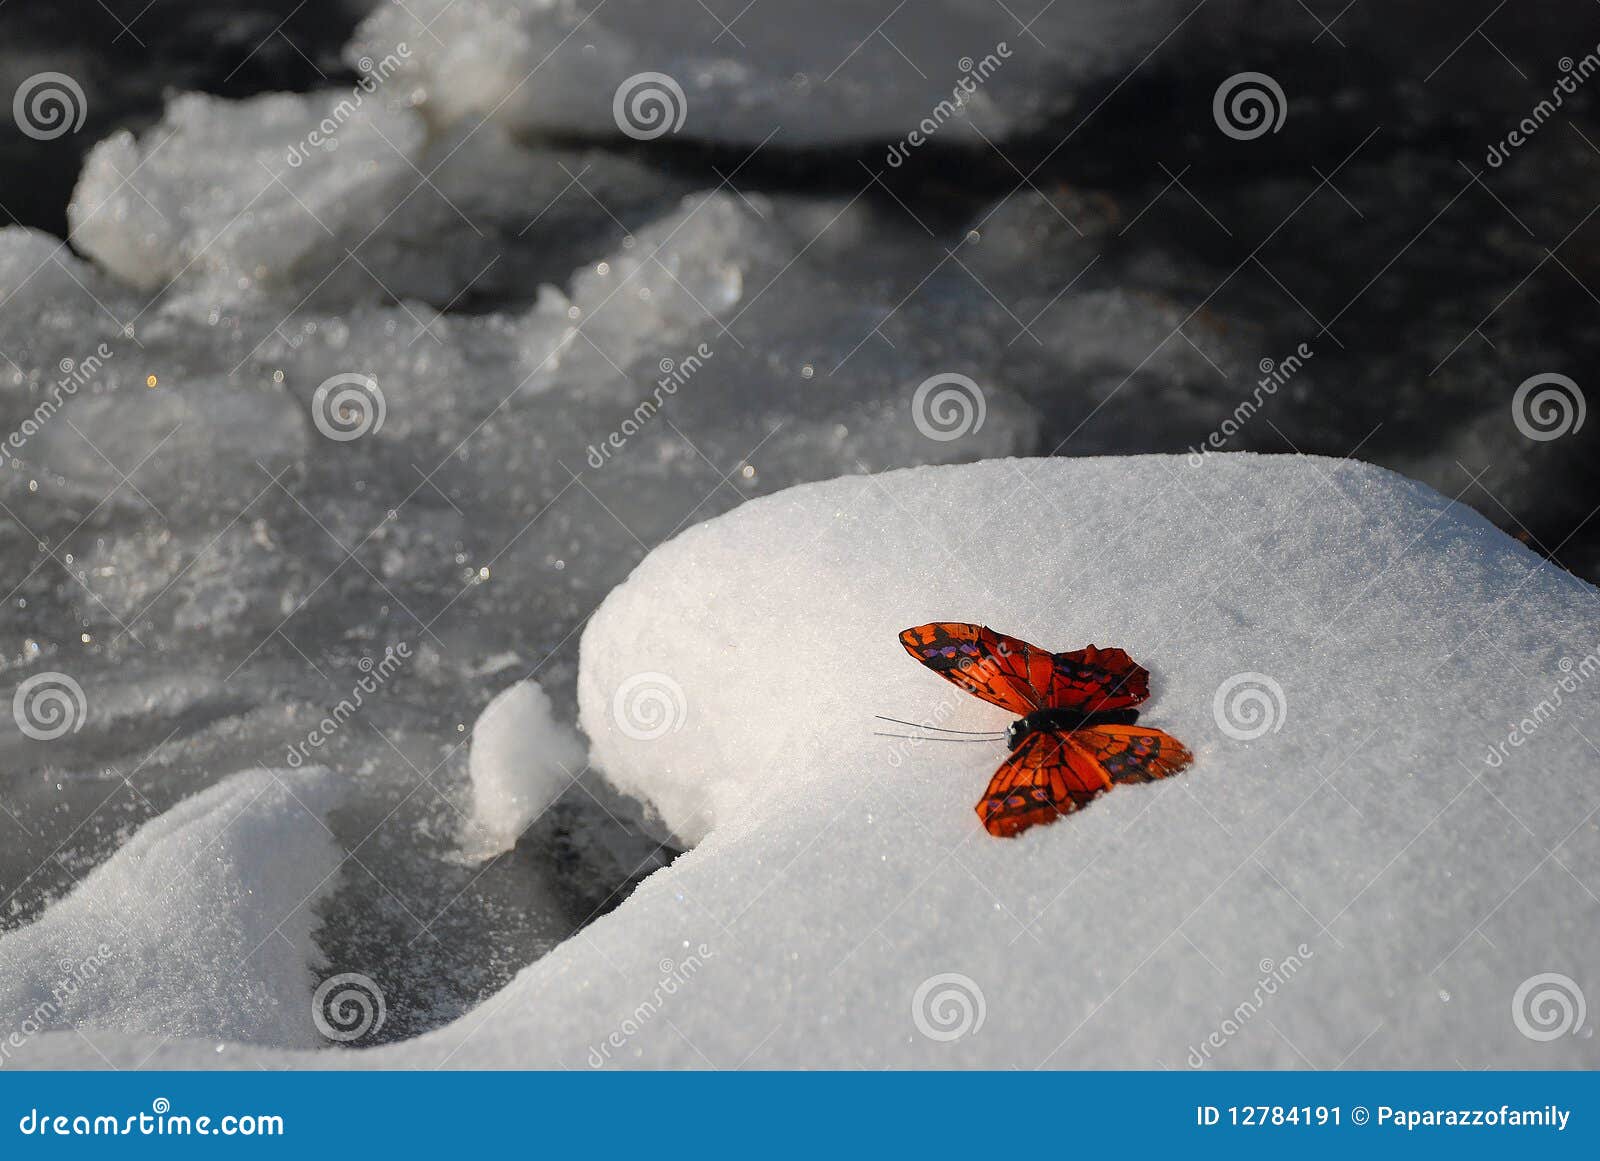 butterfly in winter